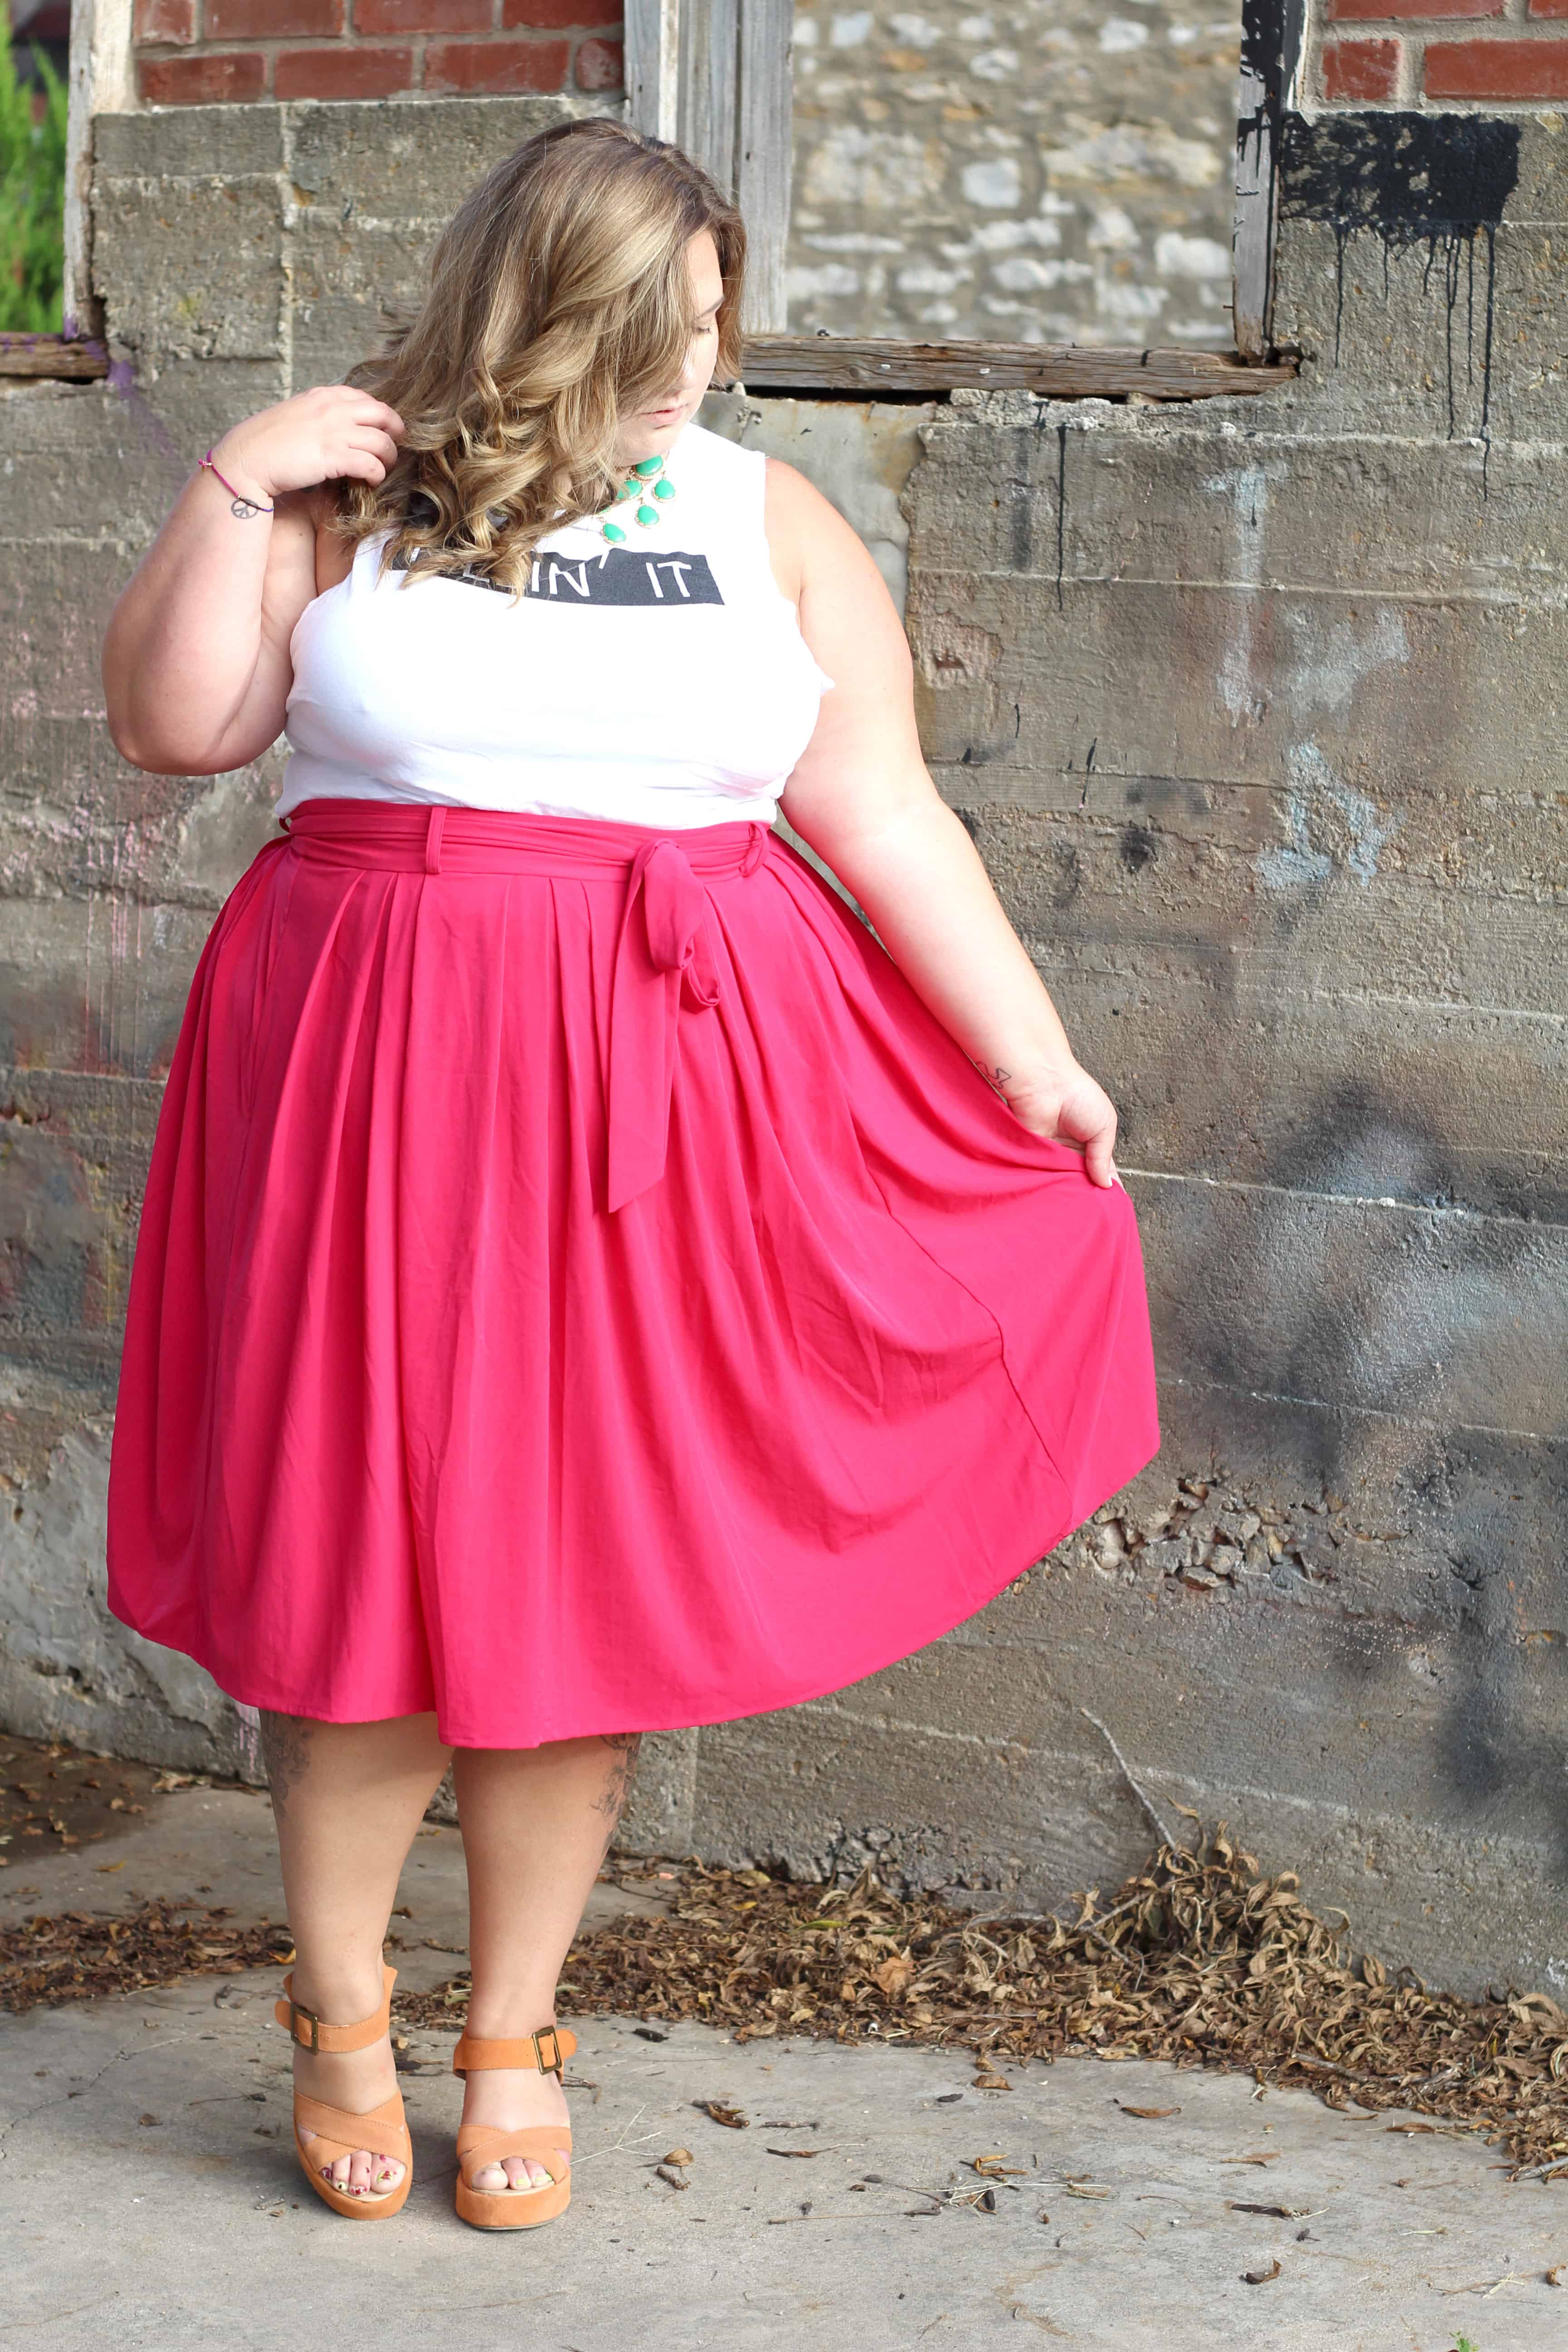 fat girl in skirt